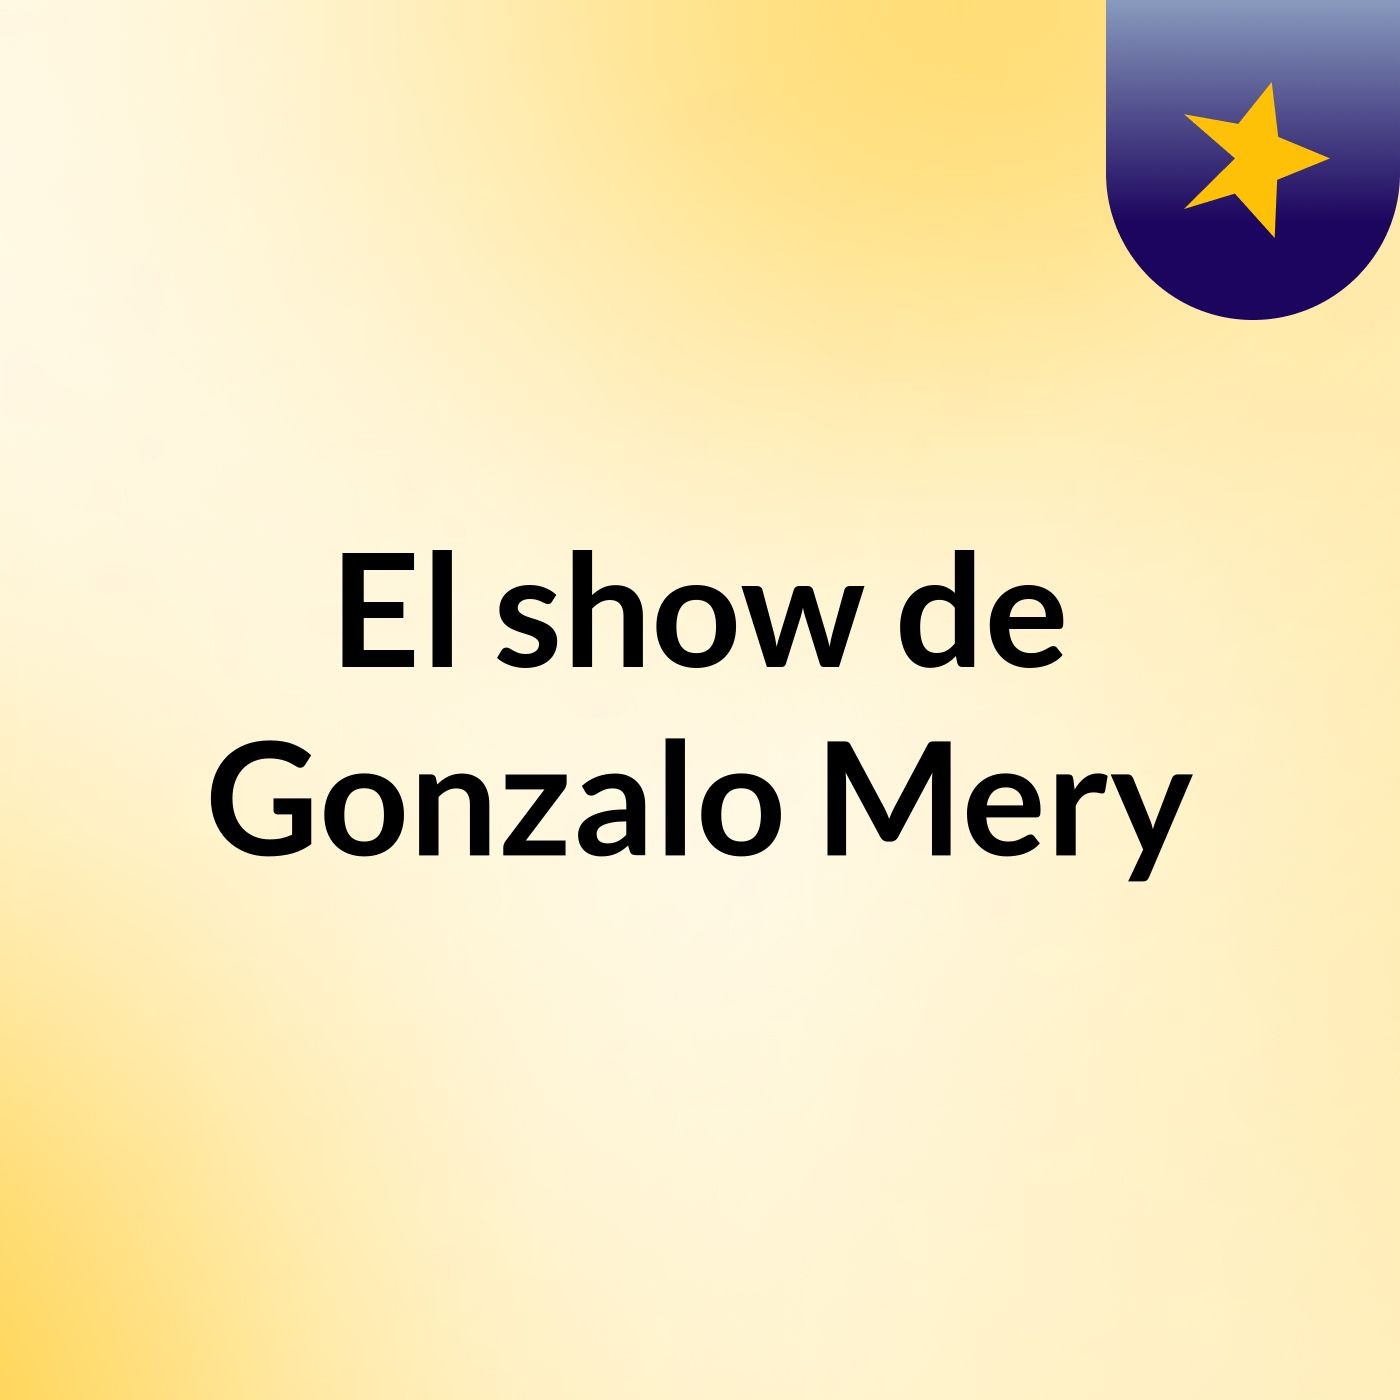 El show de Gonzalo Mery